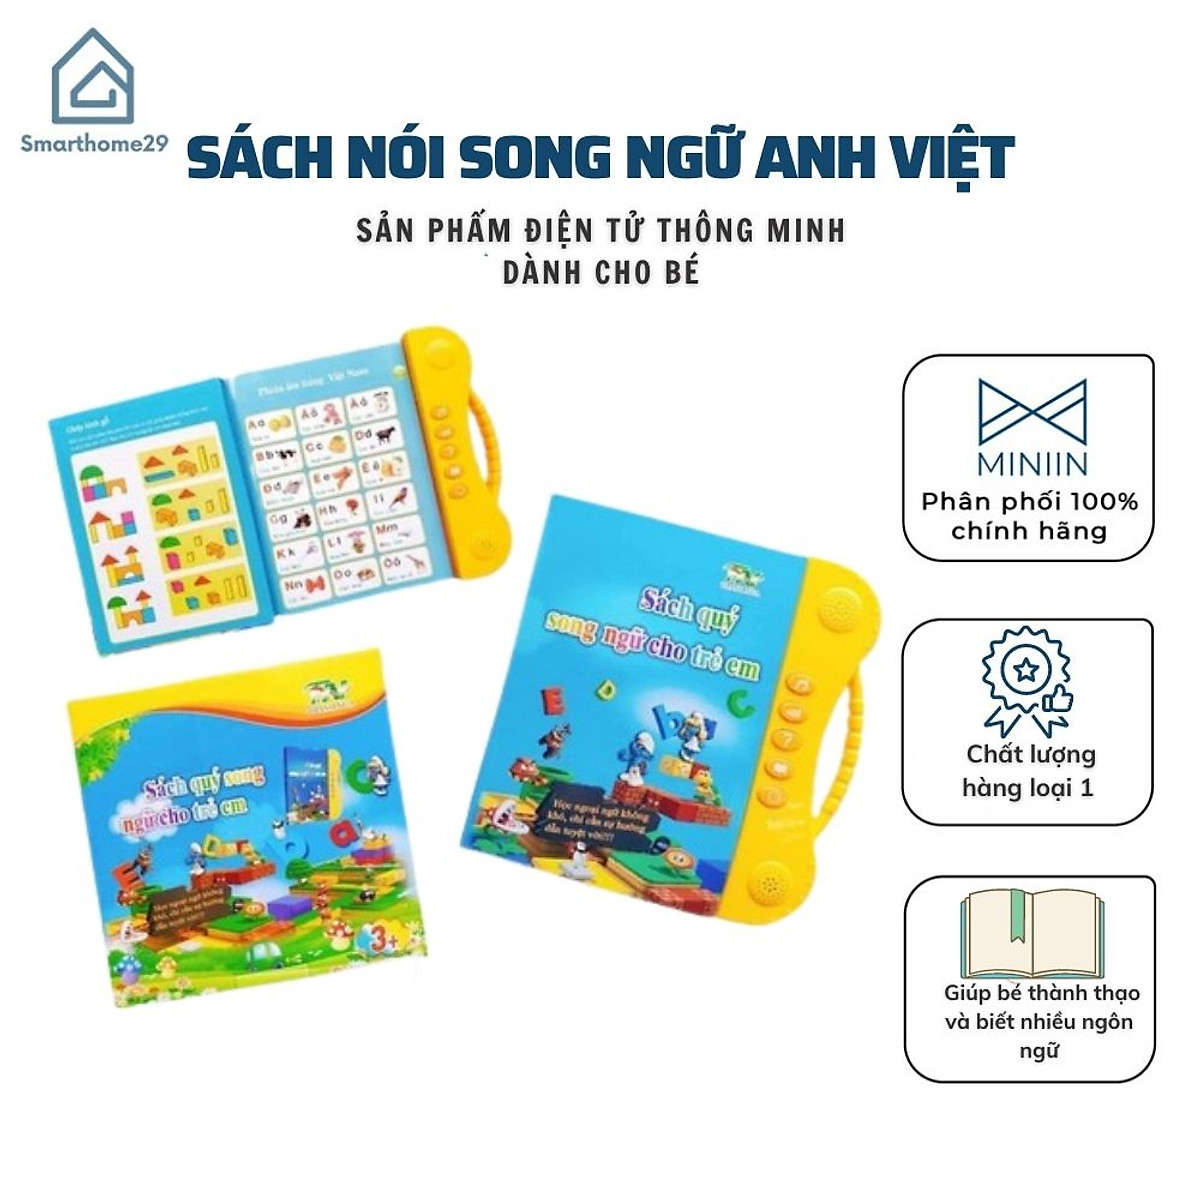 Sách Nói Song Ngữ Anh Việt Điện Tử Thông Minh - Giúp Bé Phát Triển IQ